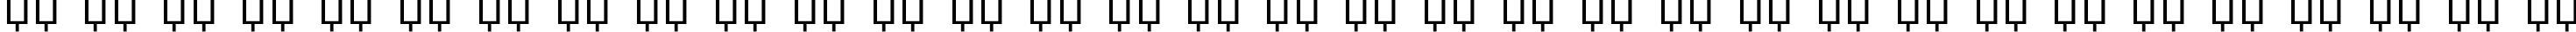 Пример написания русского алфавита шрифтом Futuris